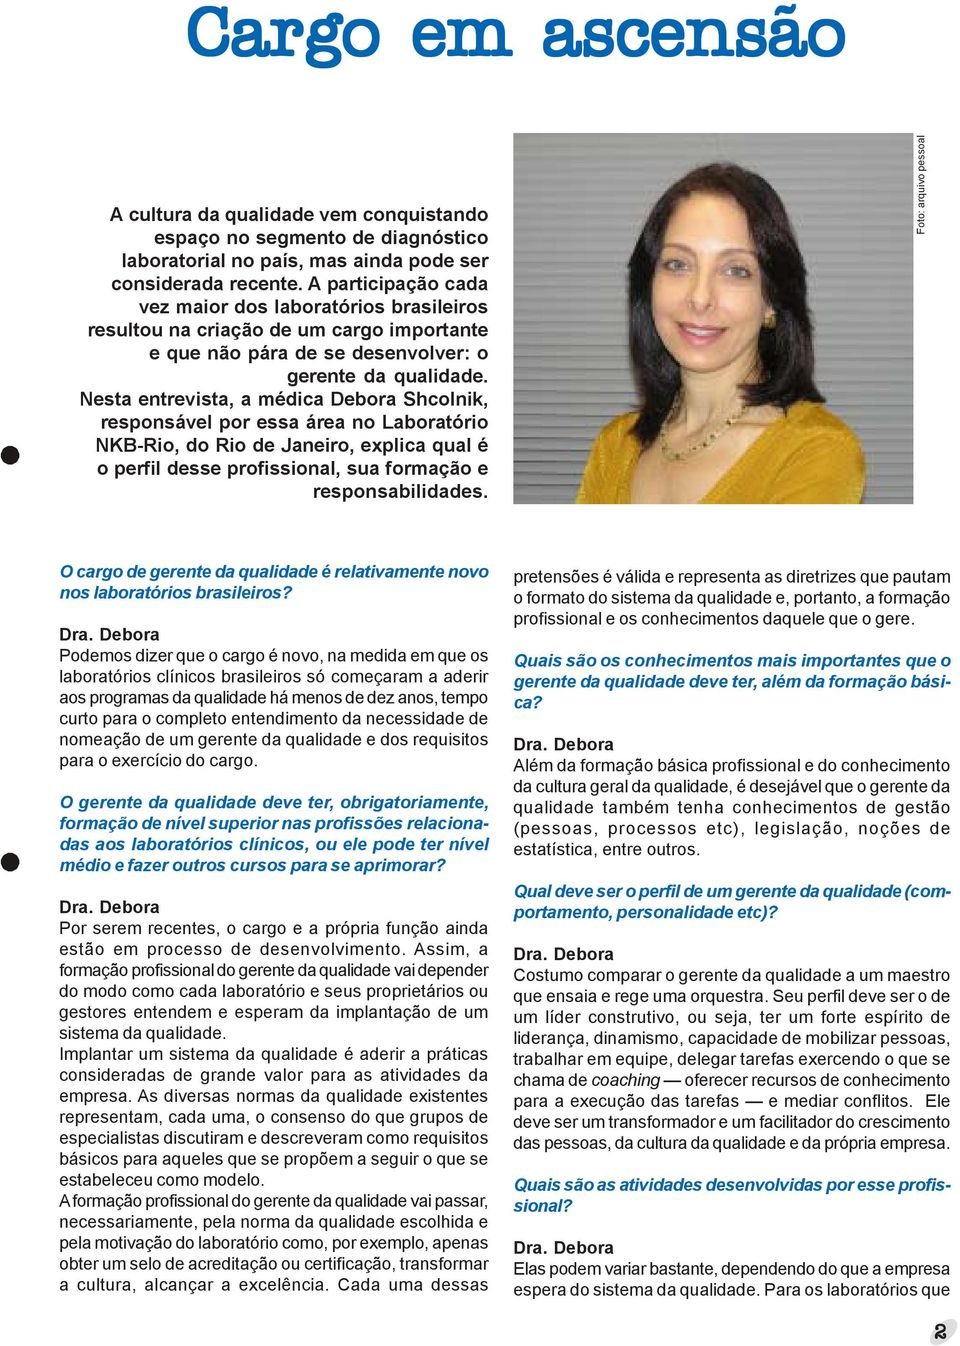 Nesta entrevista, a médica Debora Shcolnik, responsável por essa área no Laboratório NKB-Rio, do Rio de Janeiro, explica qual é o perfil desse profissional, sua formação e responsabilidades.